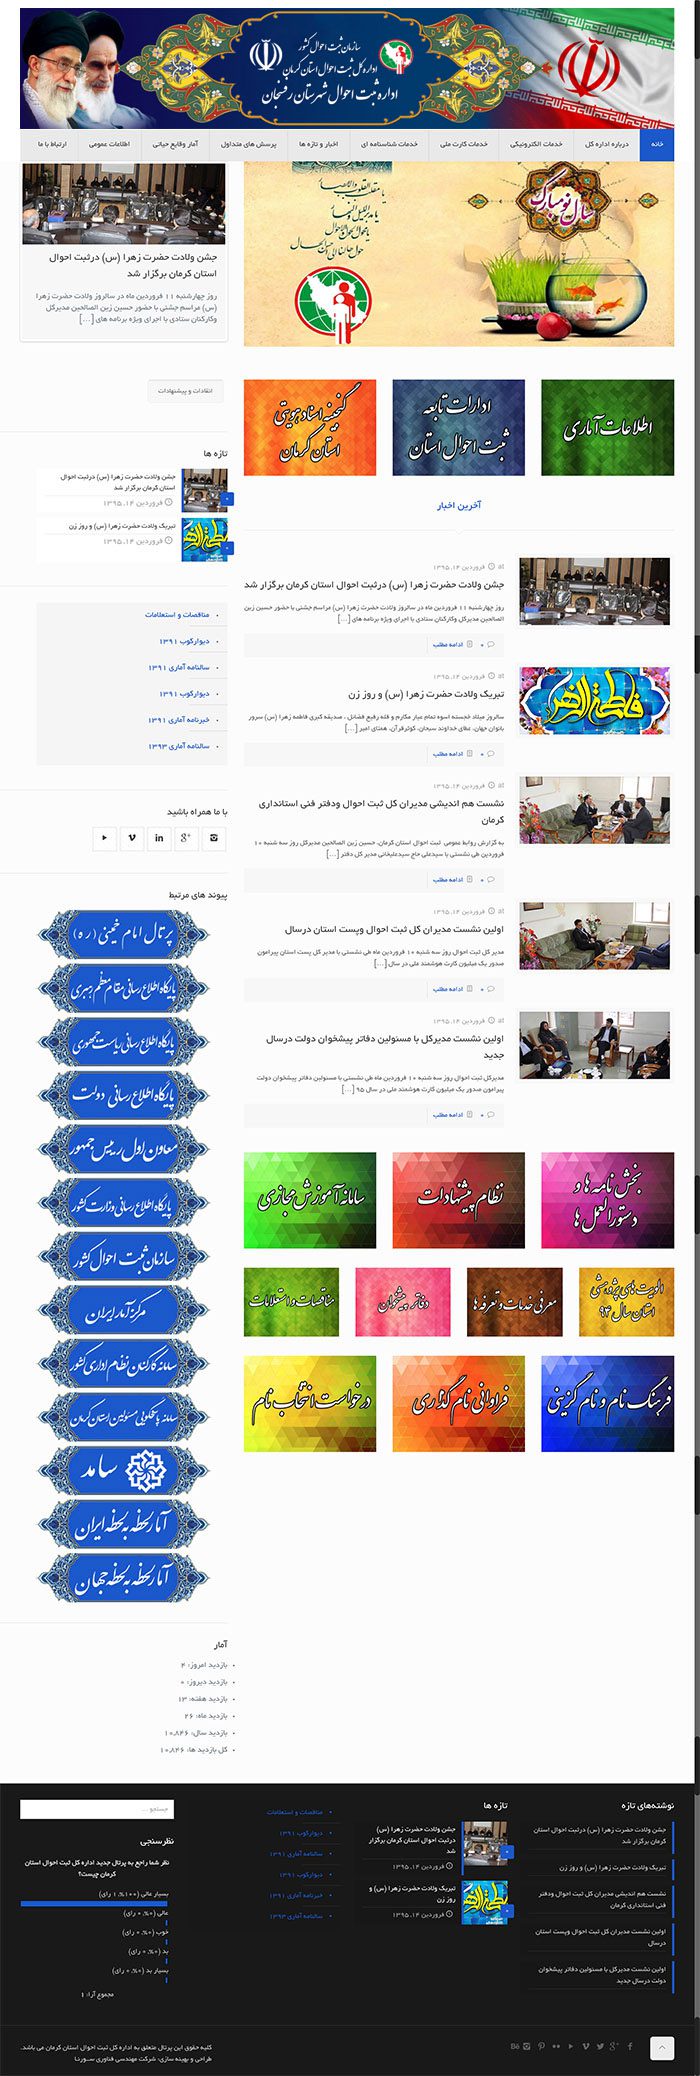 طراحی سایت اداره ثبت احوال شهرستان رفسنجان توسط شرکت طراحی سایت سورنا در کرمان